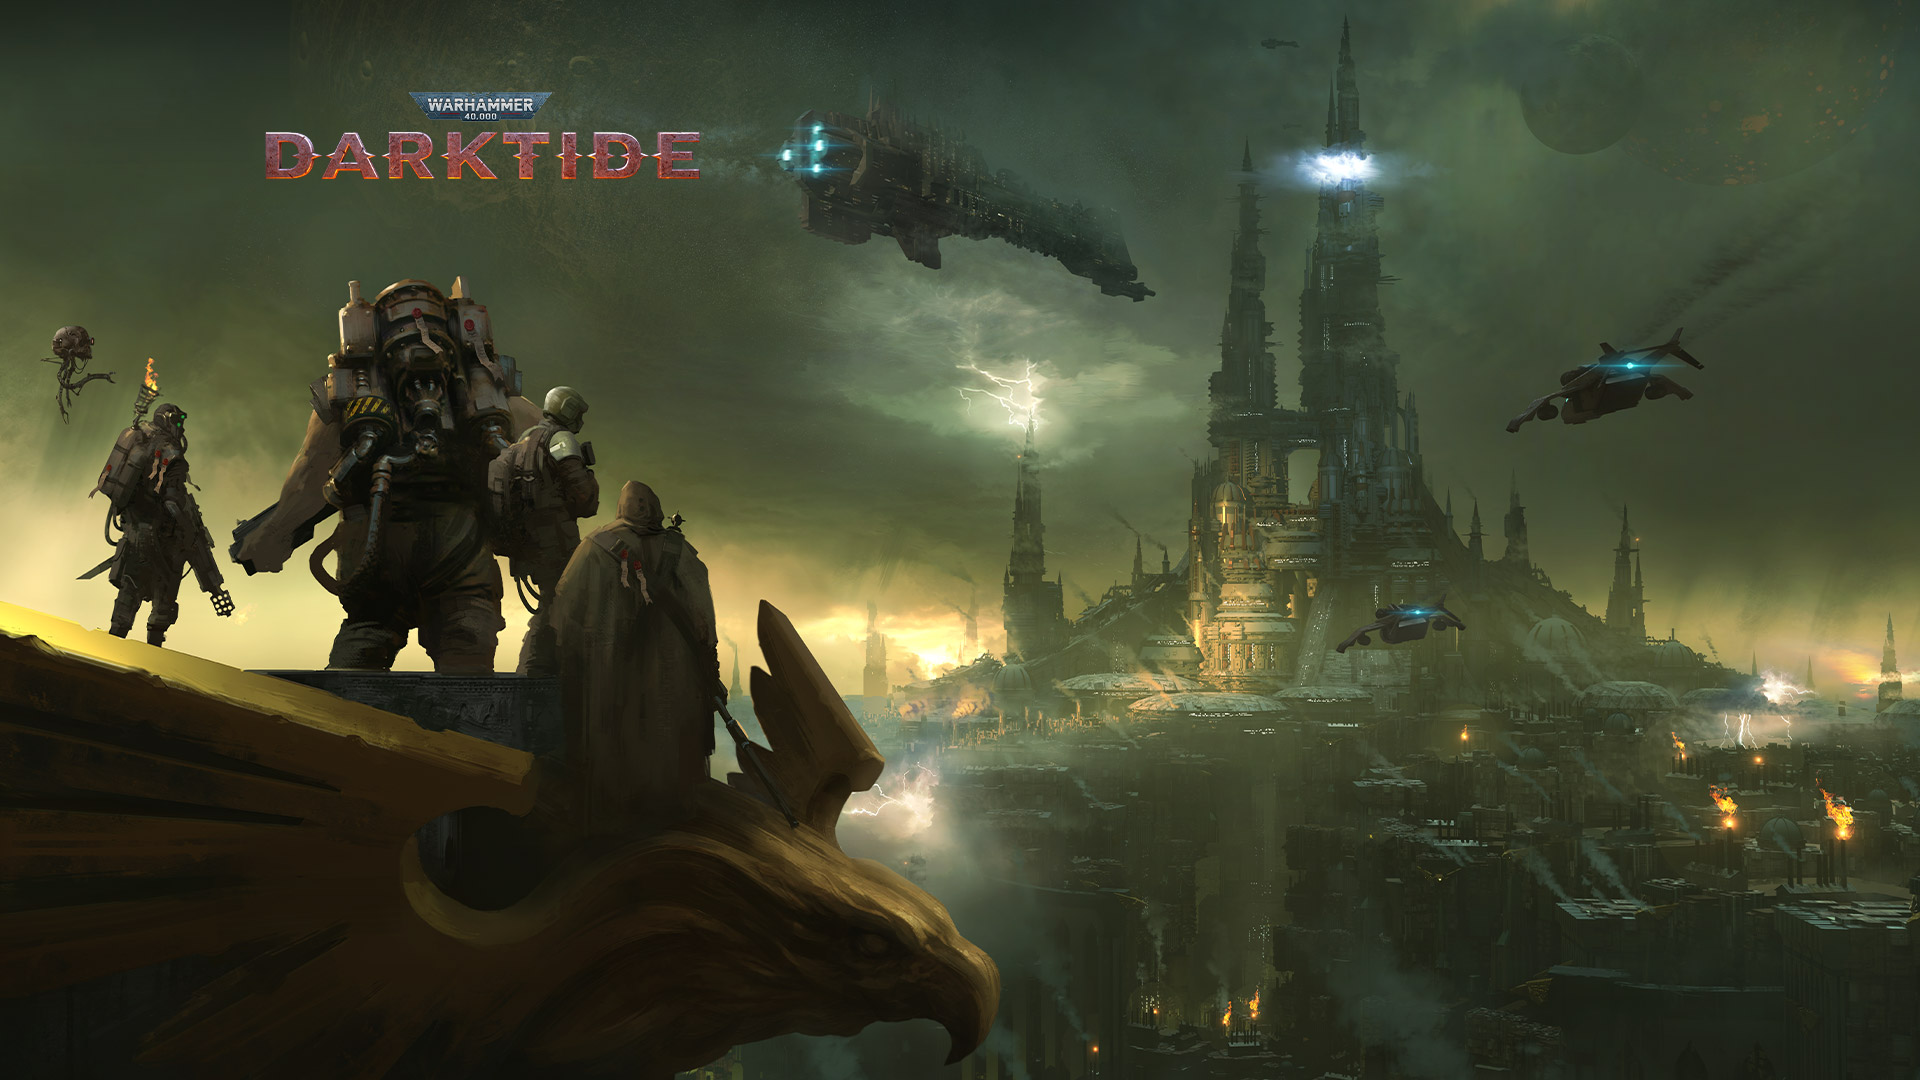 Warhammer 40.000 Darktide, eine Gruppe von Figuren überblickt eine in Nebel gehüllte Stadt.